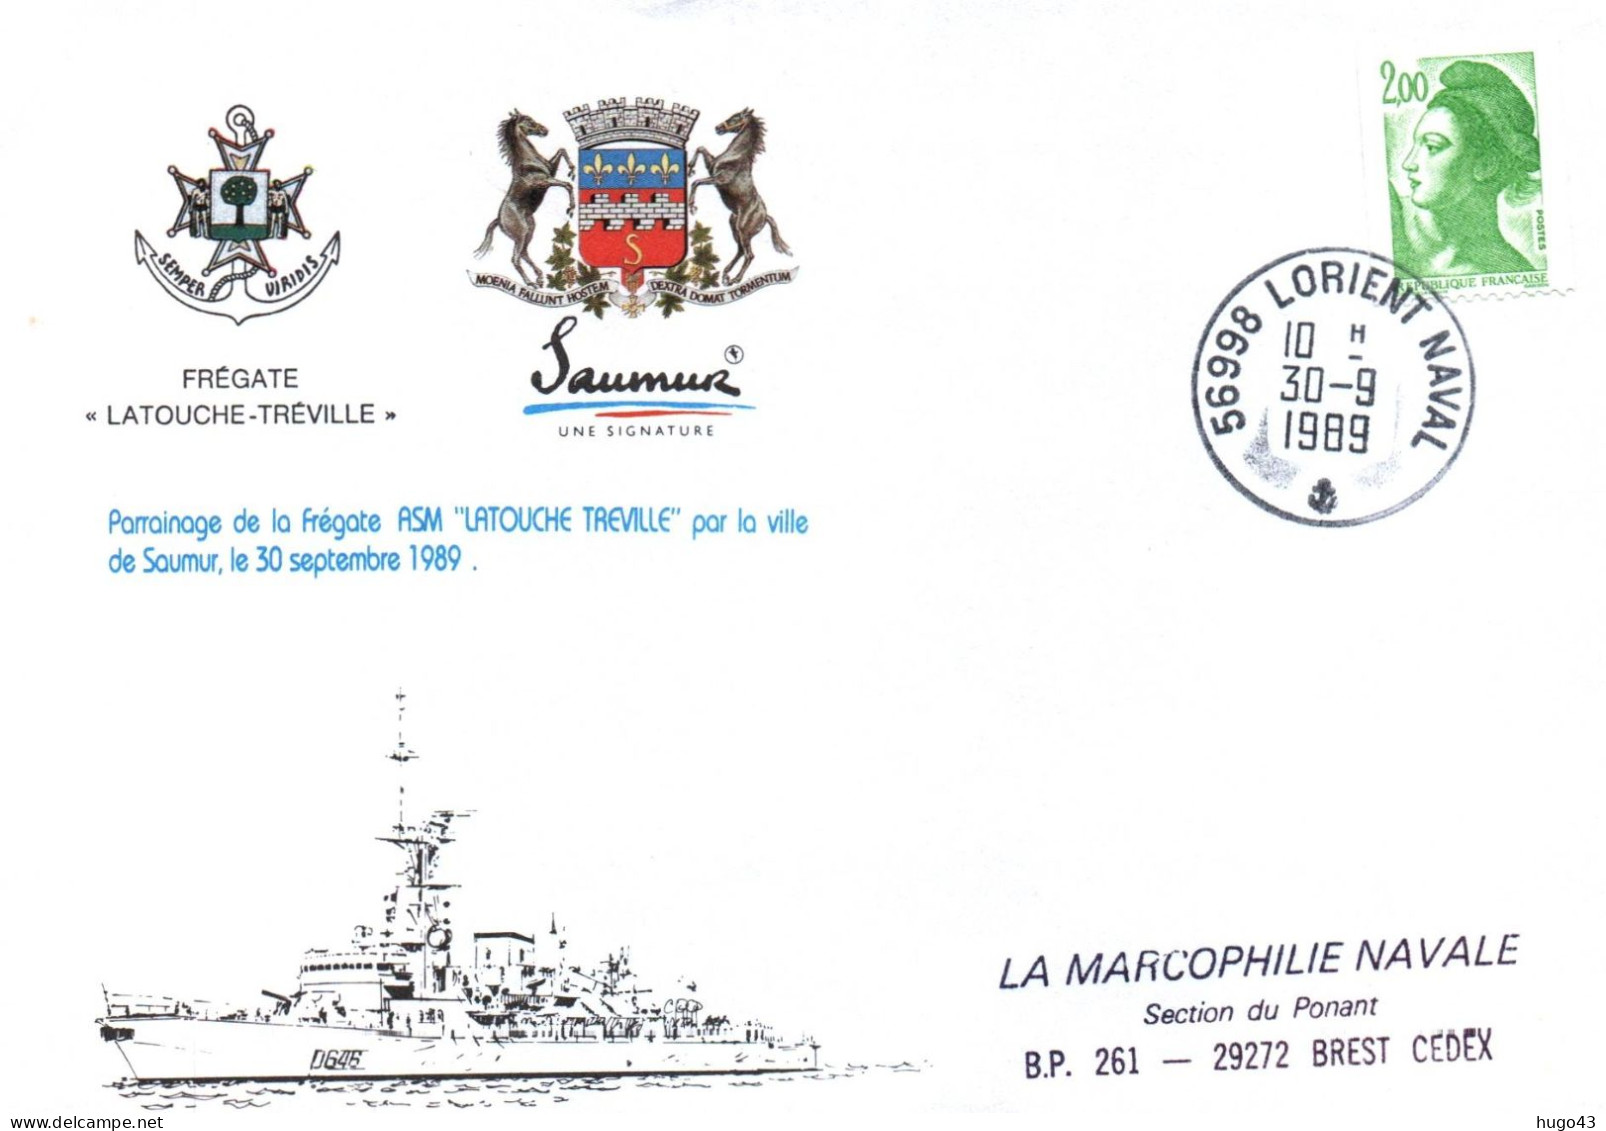 ENVELOPPE AVEC CACHET FREGATE LATOUCHE TREVILLE - PARRAINAGE VILLE DE SAUMUR LE 30/09/89 - LORIENT NAVAL LE 30/09/89 - Correo Naval